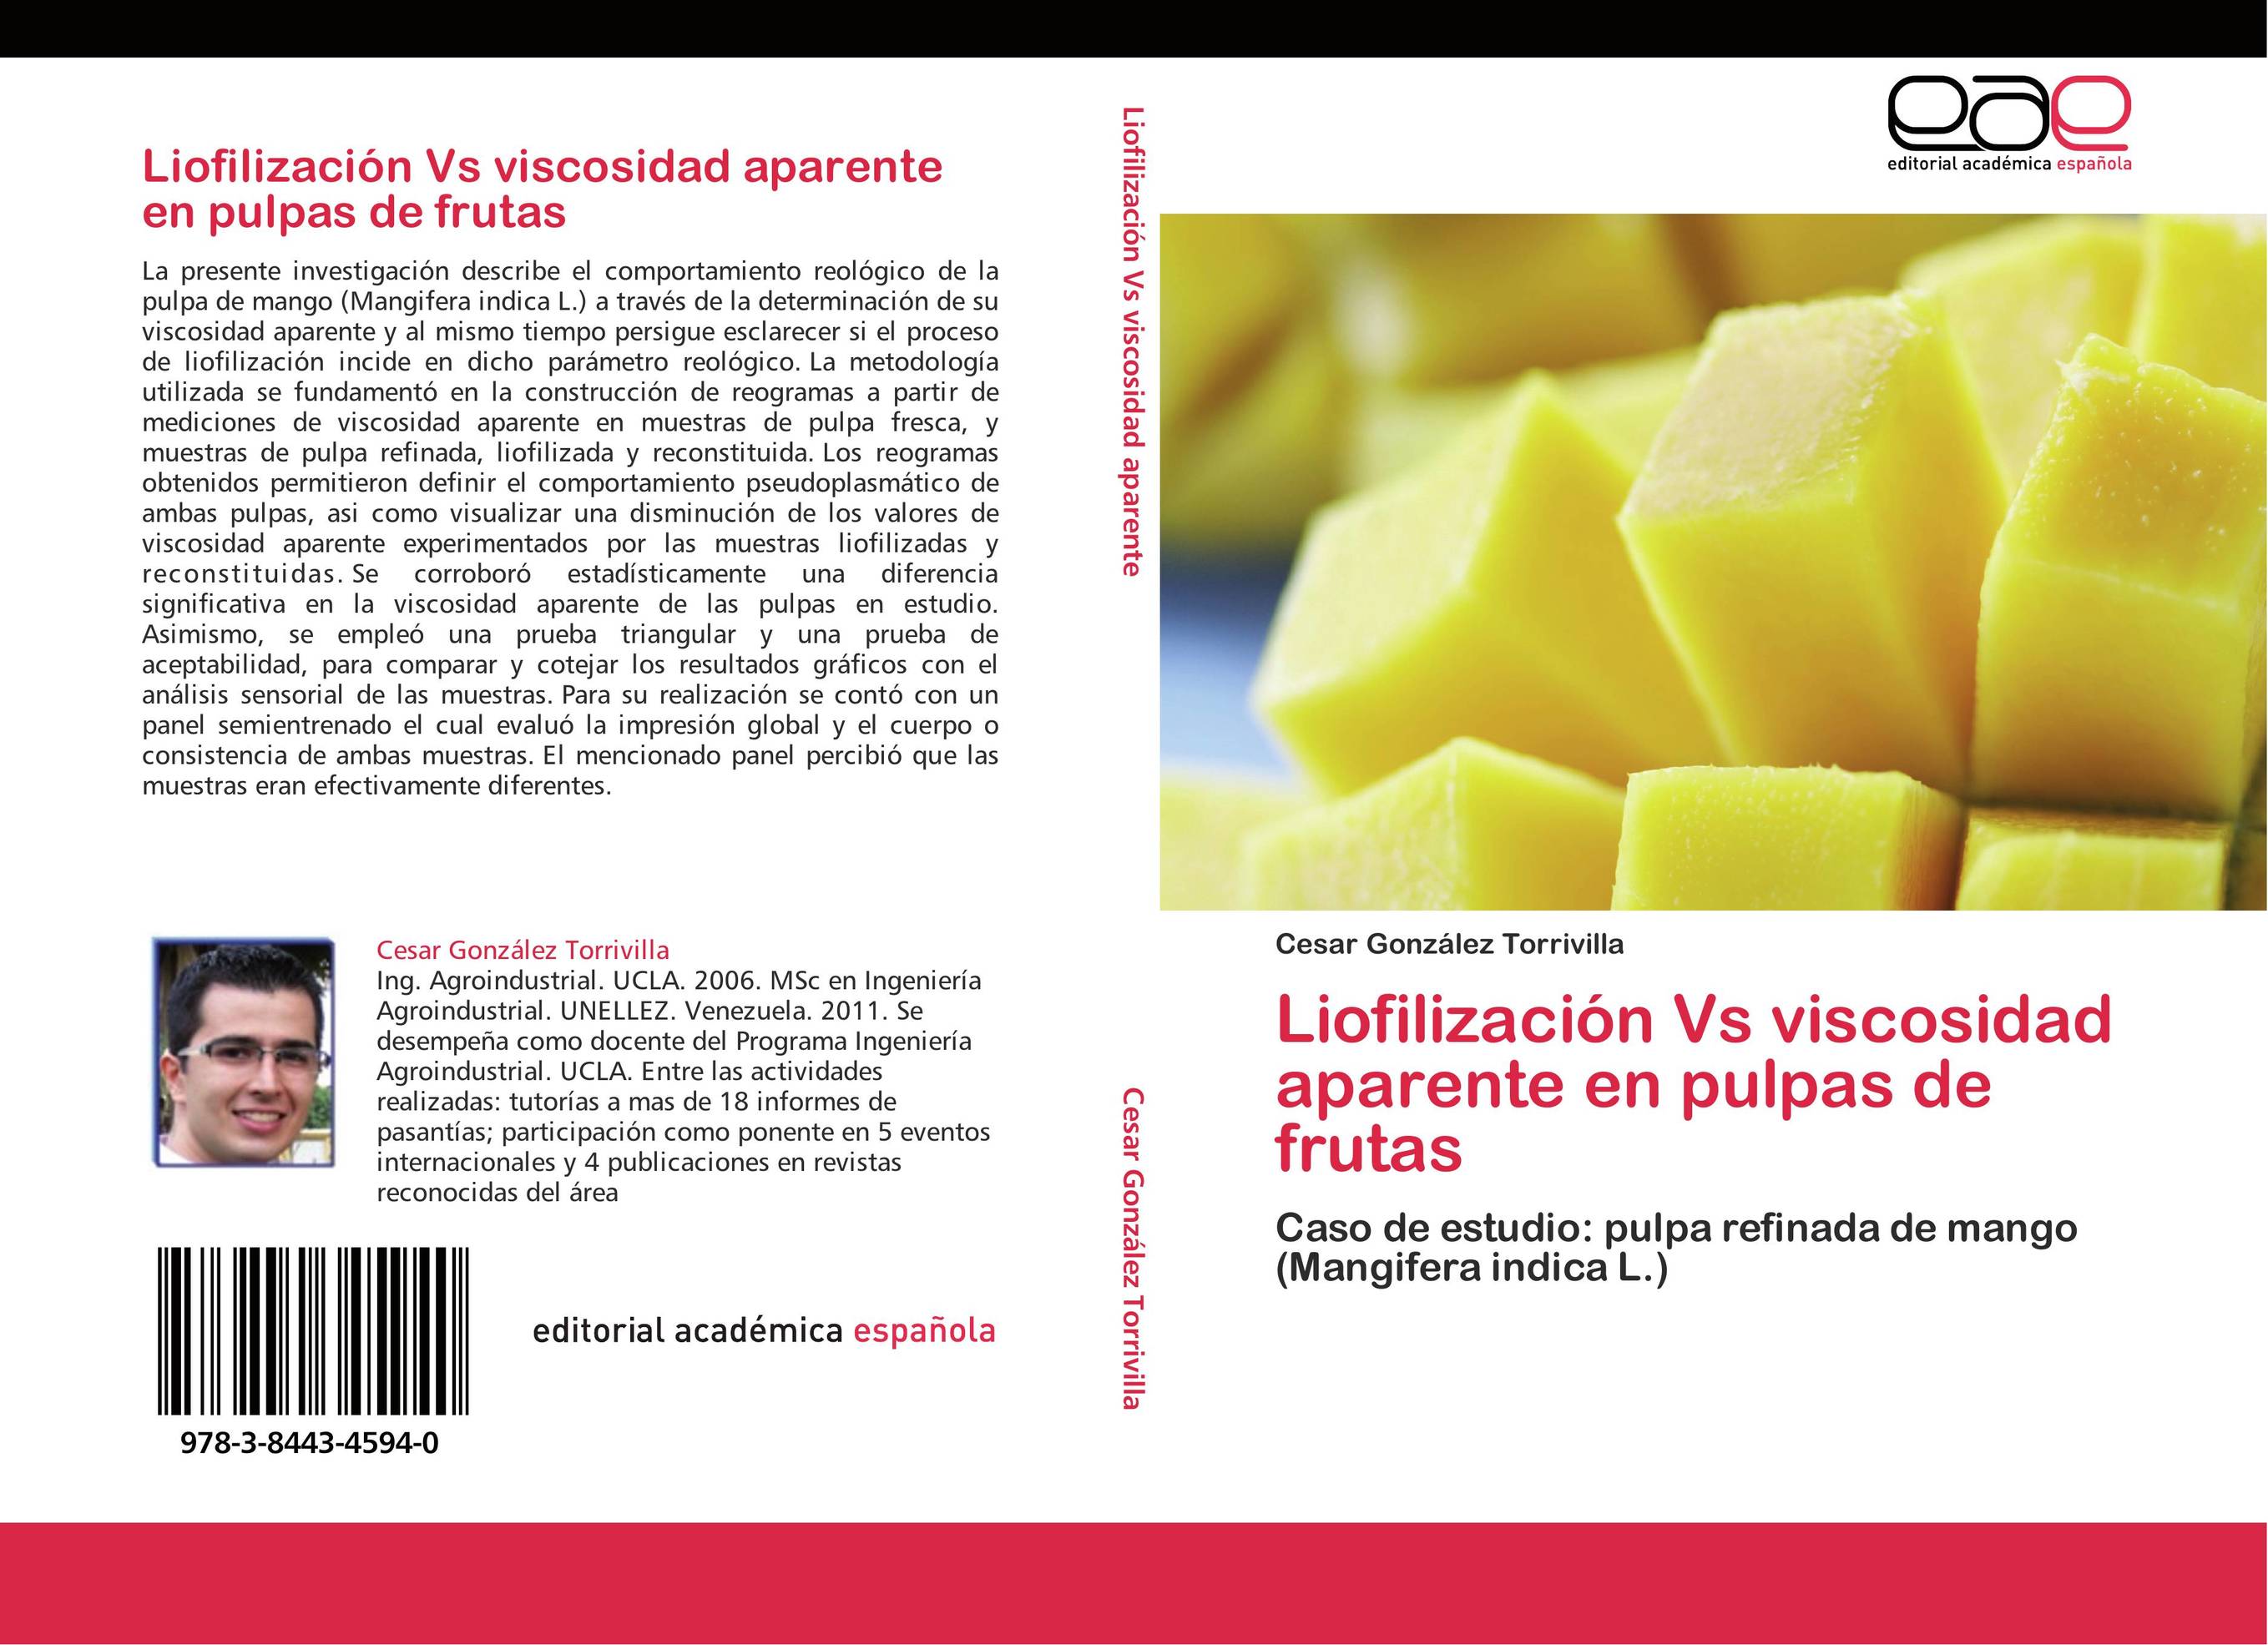 Liofilización Vs viscosidad aparente en pulpas de frutas